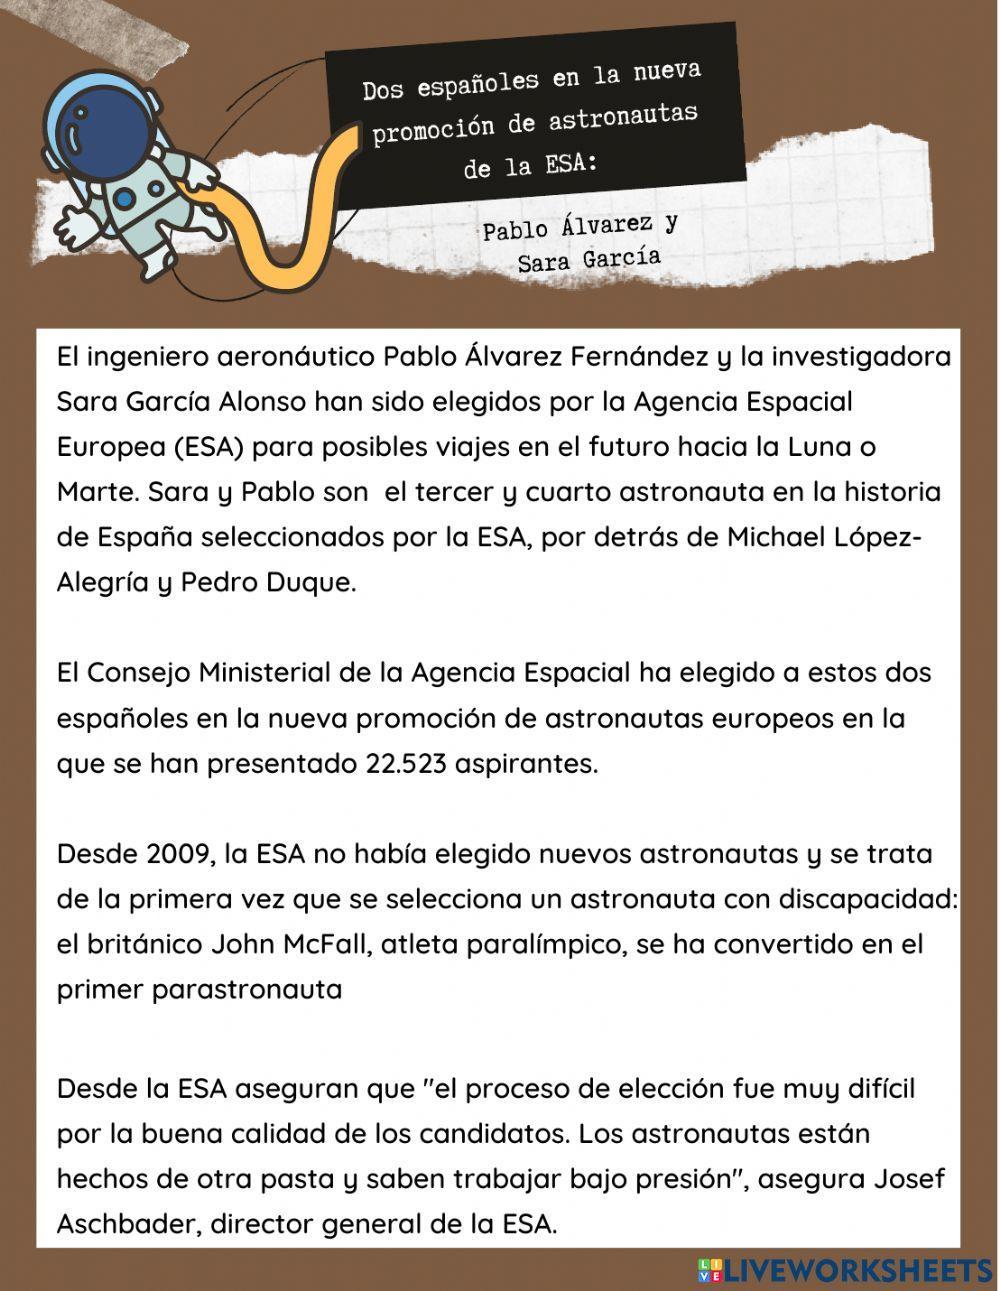 Dos españoles la nueva promoción de astronautas de la ESA: Pablo Álvarez y Sara García